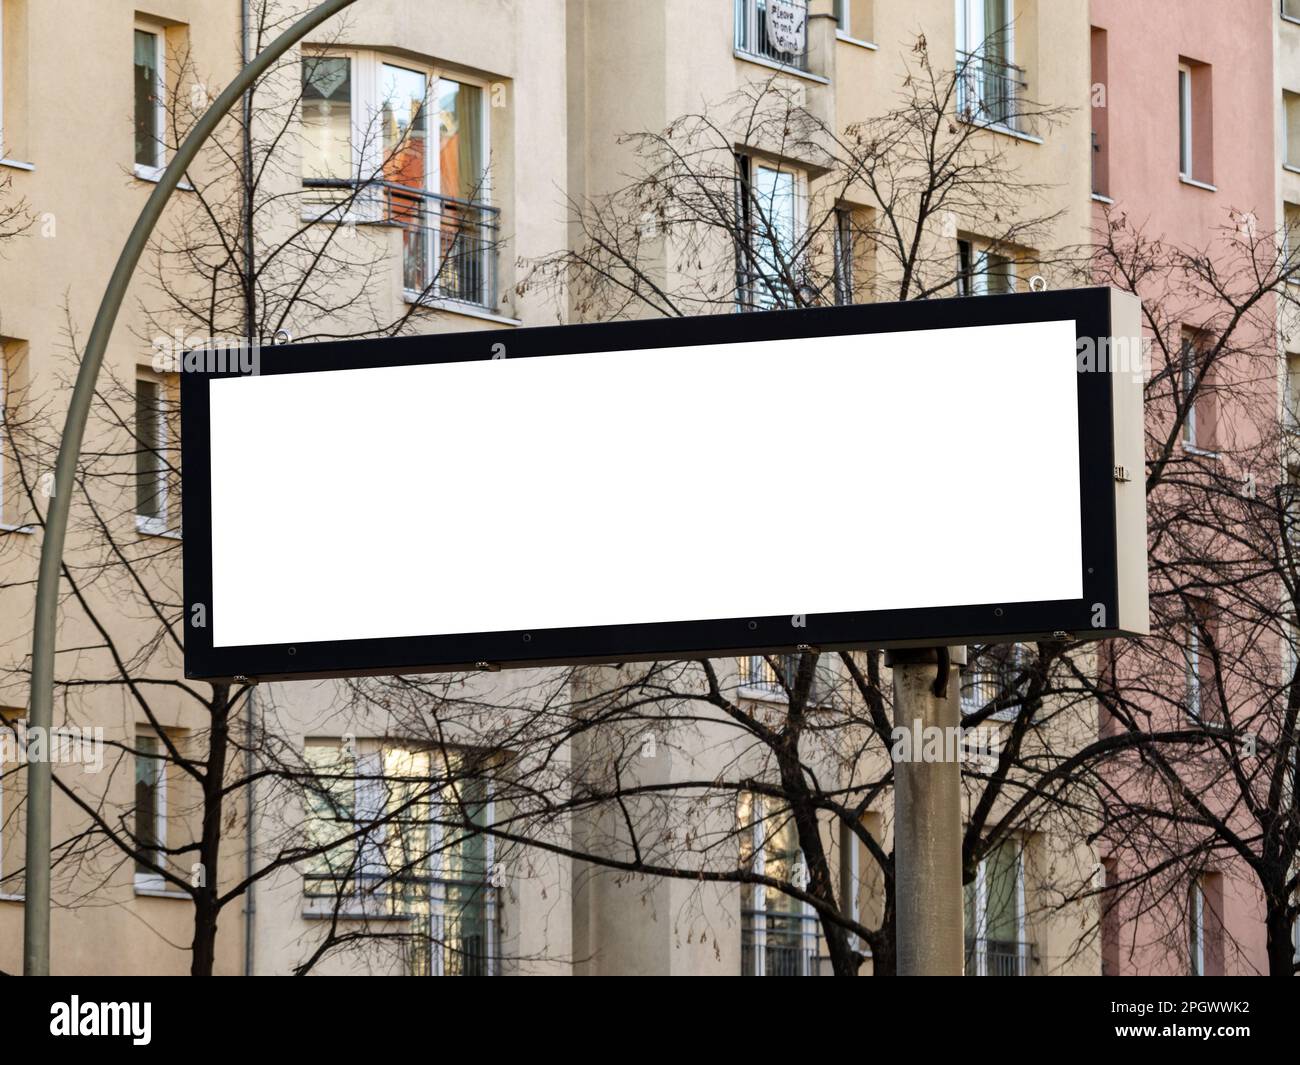 Spazio libero su cartellone in un'area urbana. Schermo bianco vuoto in formato orizzontale per visualizzare informazioni o pubblicità all'utente della strada in città. Foto Stock